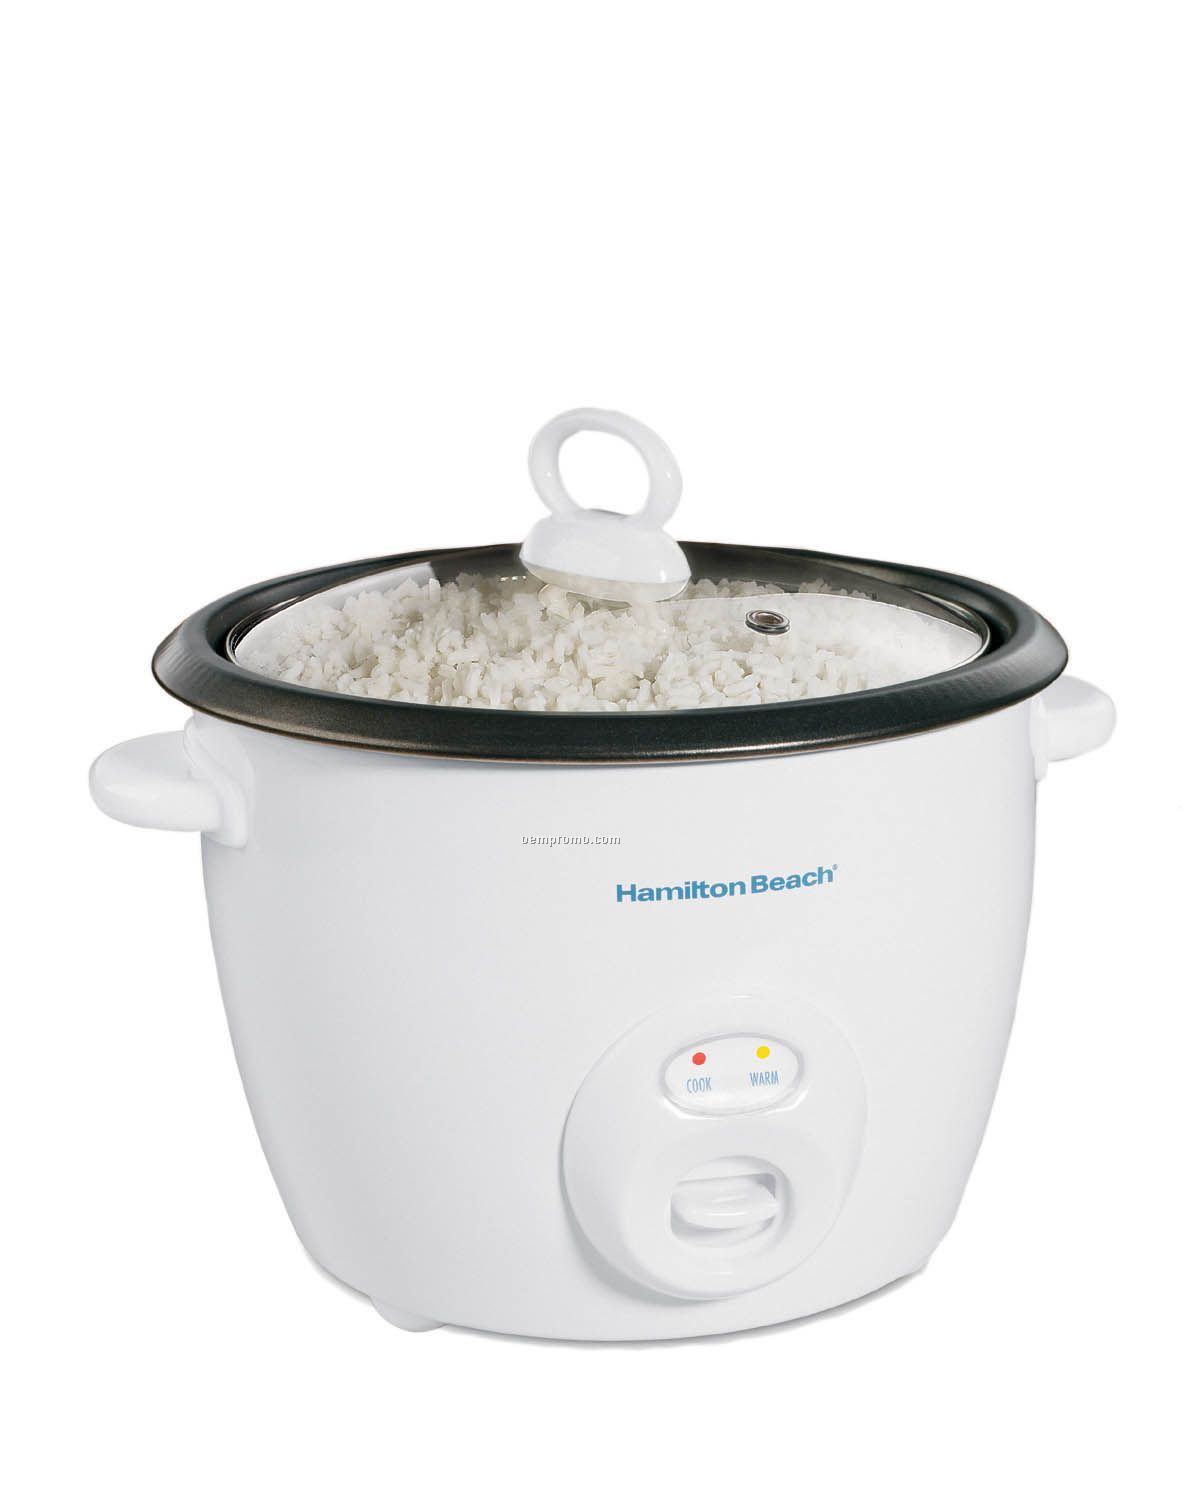 Hamilton Beach 20 Cup Rice Cooker